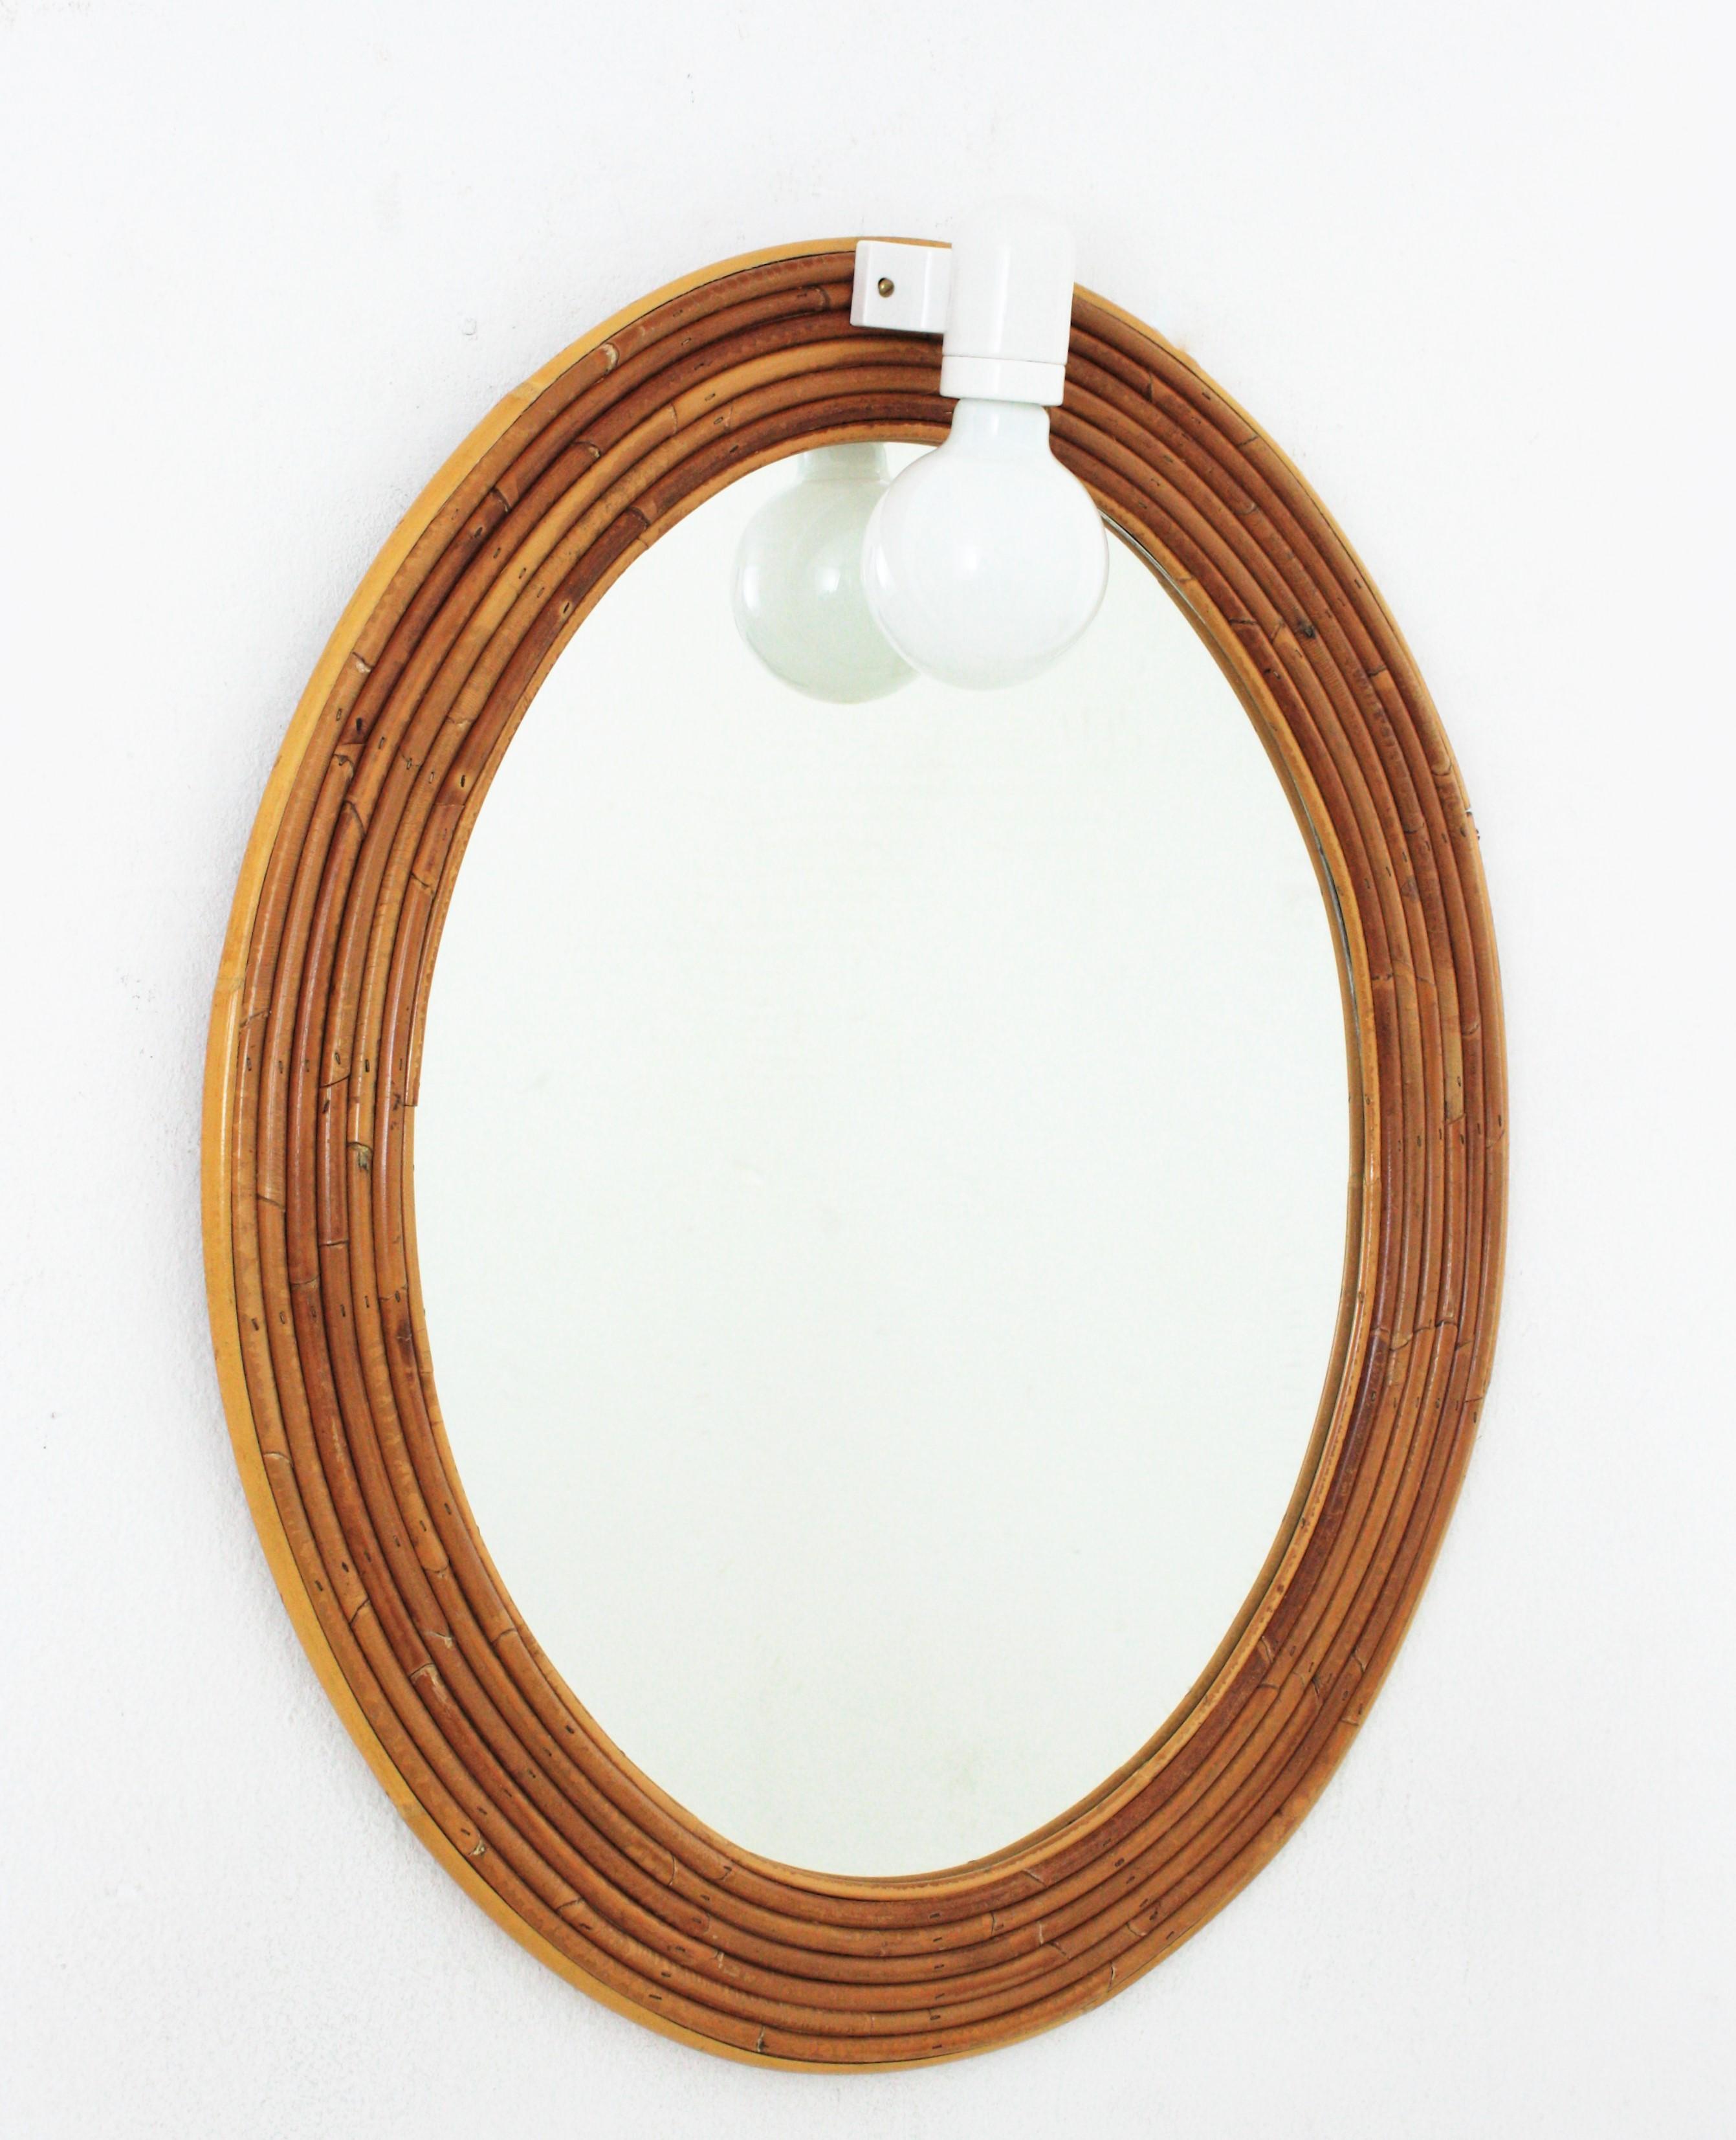 Blickfang Organic Modern Oval, handgefertigt aus Rattan / Bleistiftschilf. Wird der Vivai del Sud zugeschrieben. Italien, 1960er Jahre.
Dieser Spiegel hat einen fein gearbeiteten ovalen Rahmen, der aus mehreren Schichten von Rattanrohren besteht.